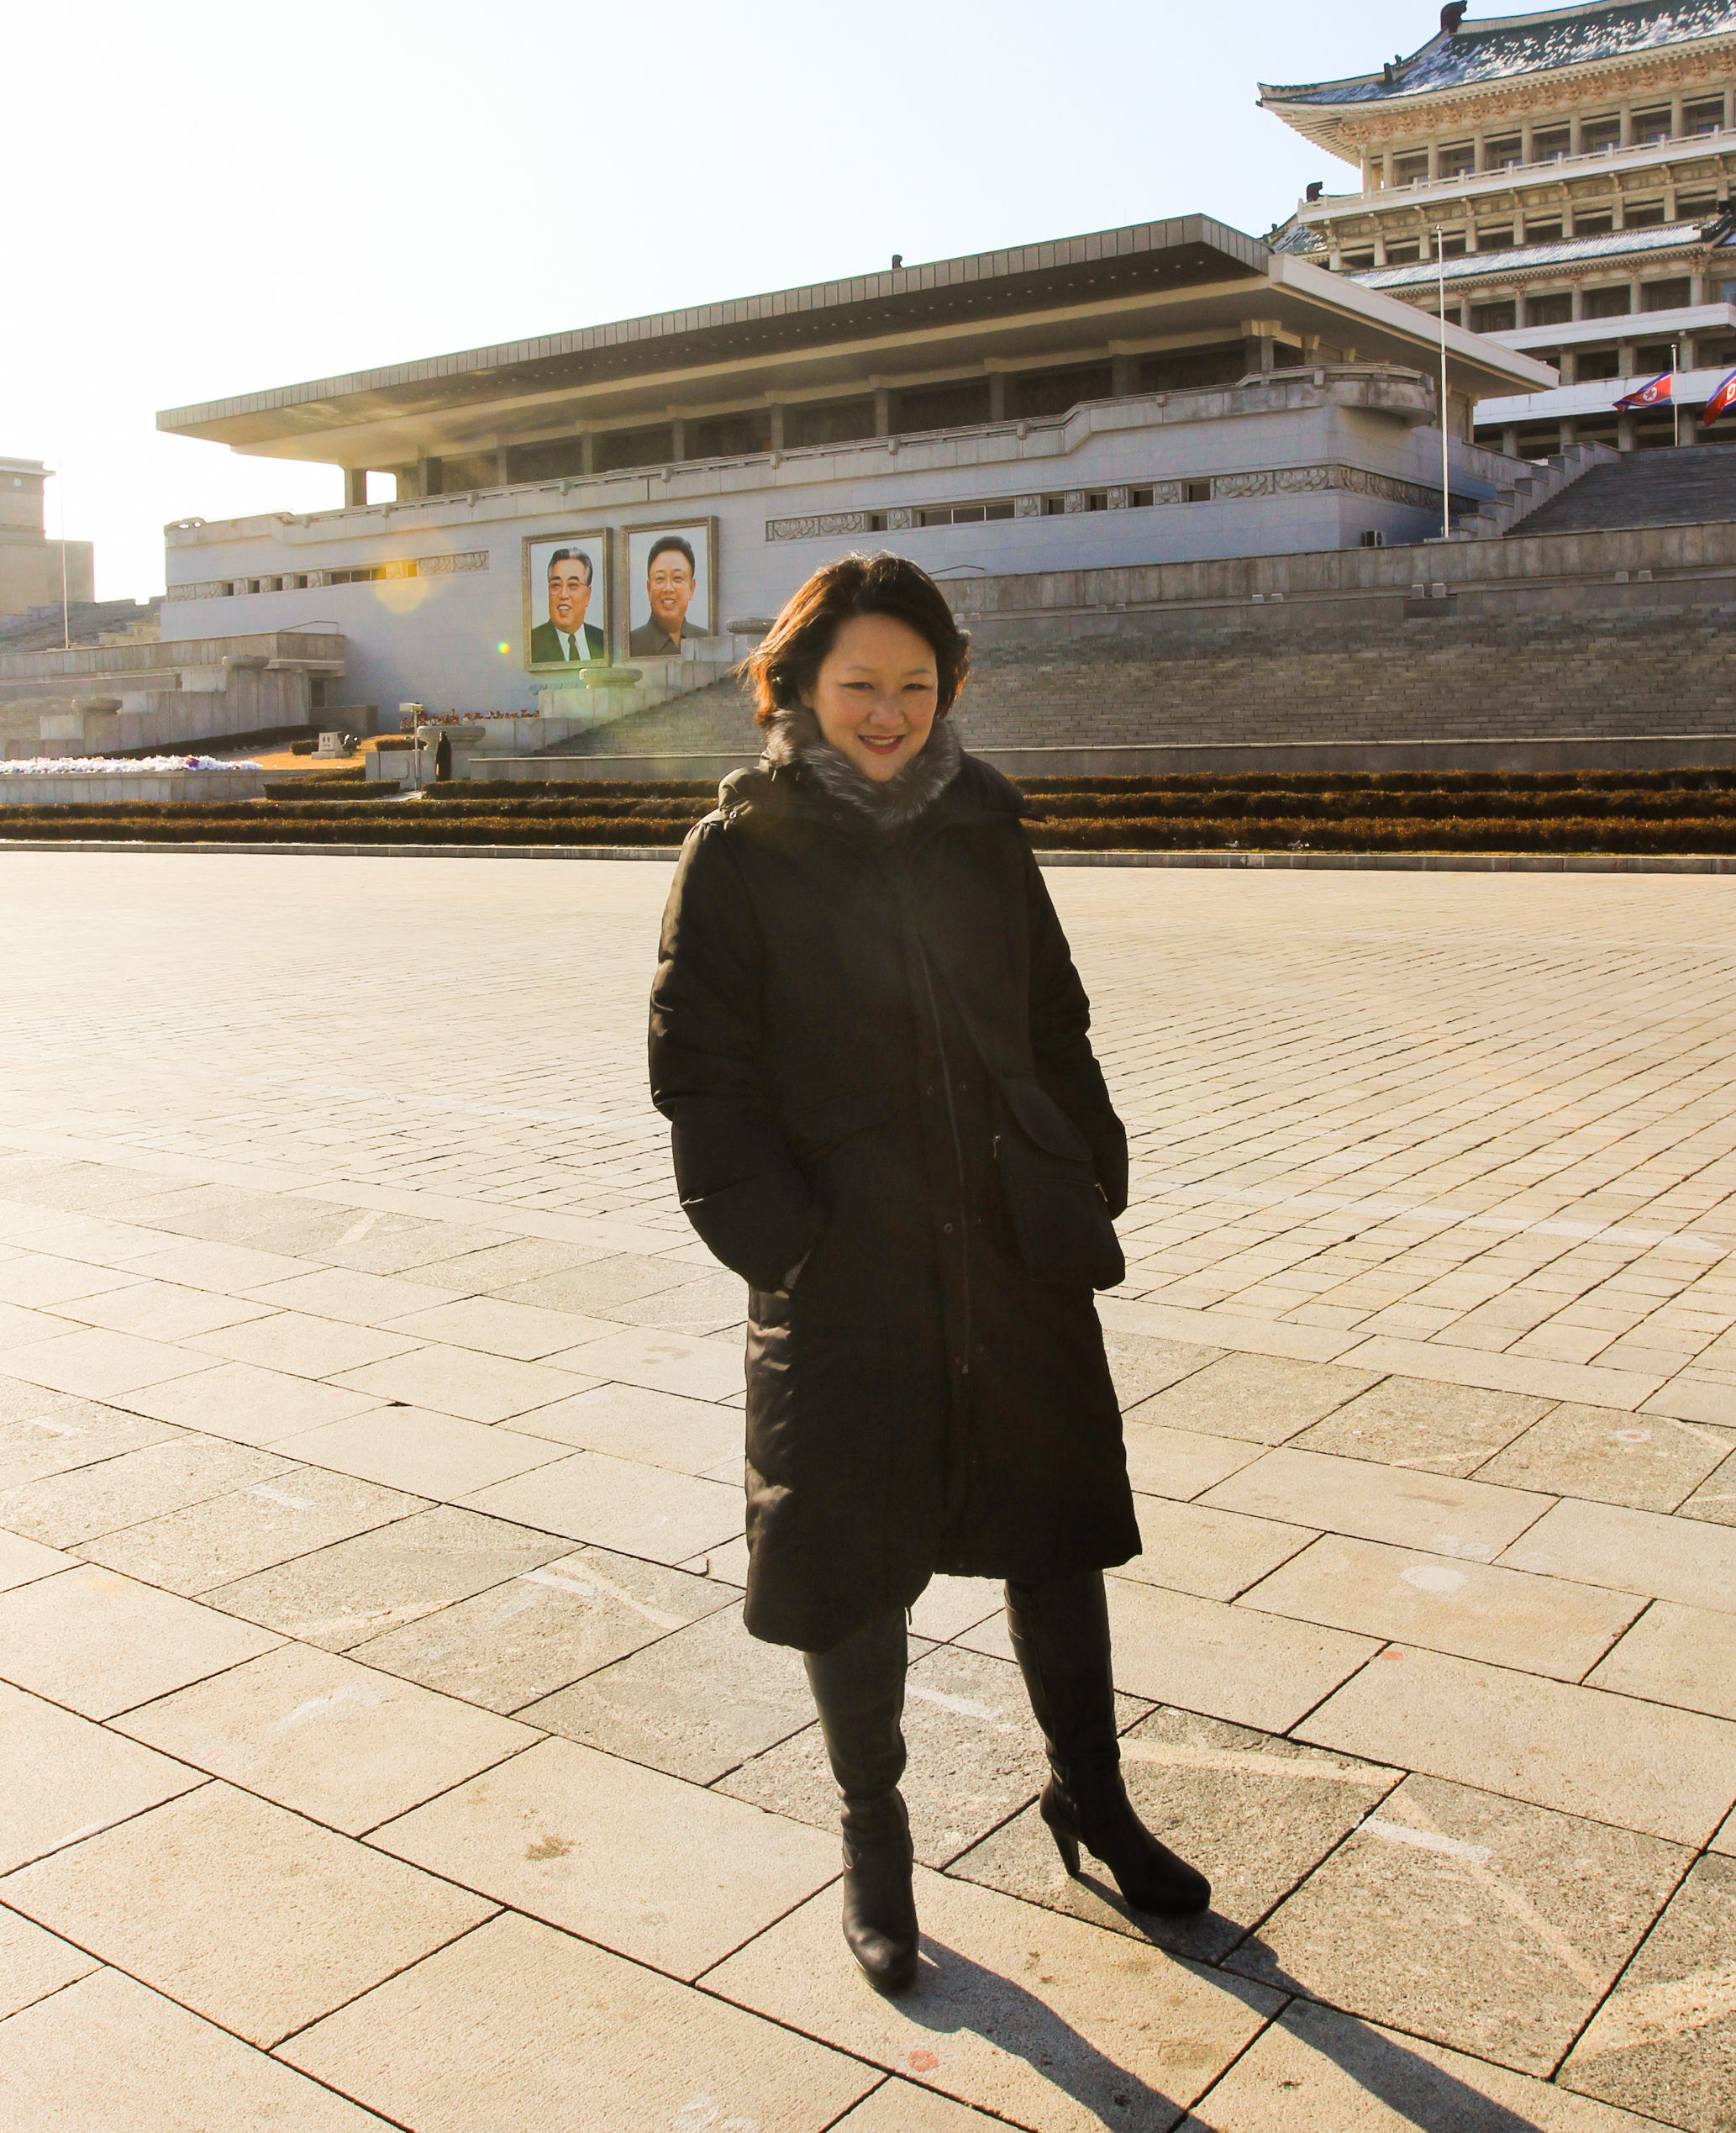  On Kim Il Sung Square 